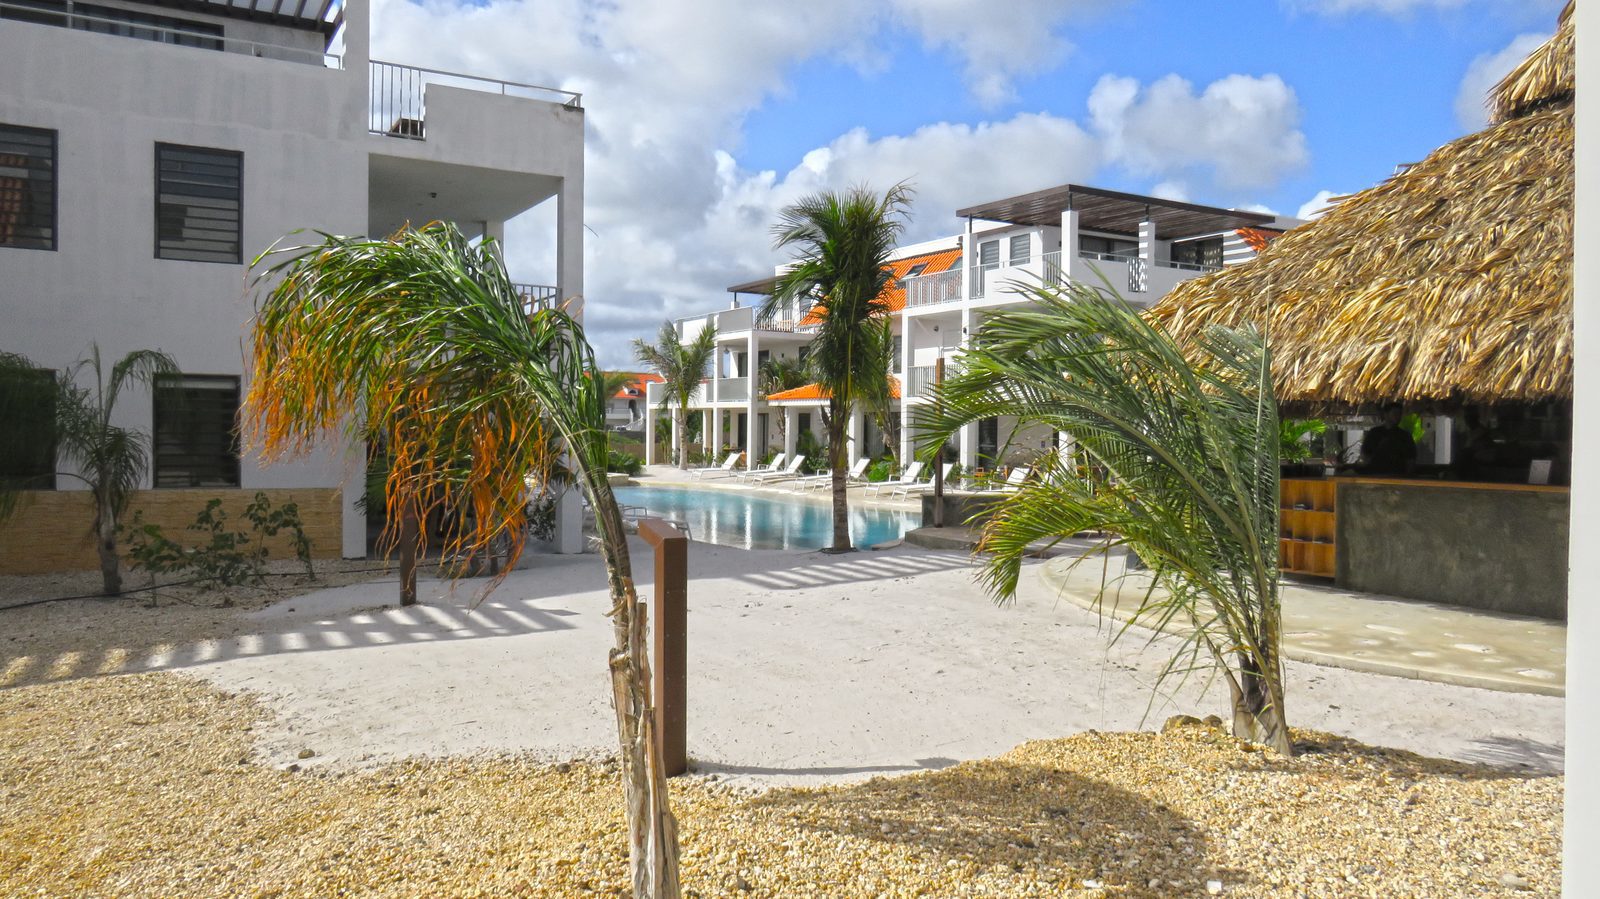 ¿Buscas alojamiento en Bonaire? Echa un vistazo a los alojamientos disponibles en nuestro complejo. ¡Apartamentos lujosos y acogedores para los niños, equipados con todas las comodidades que puedas desear!
